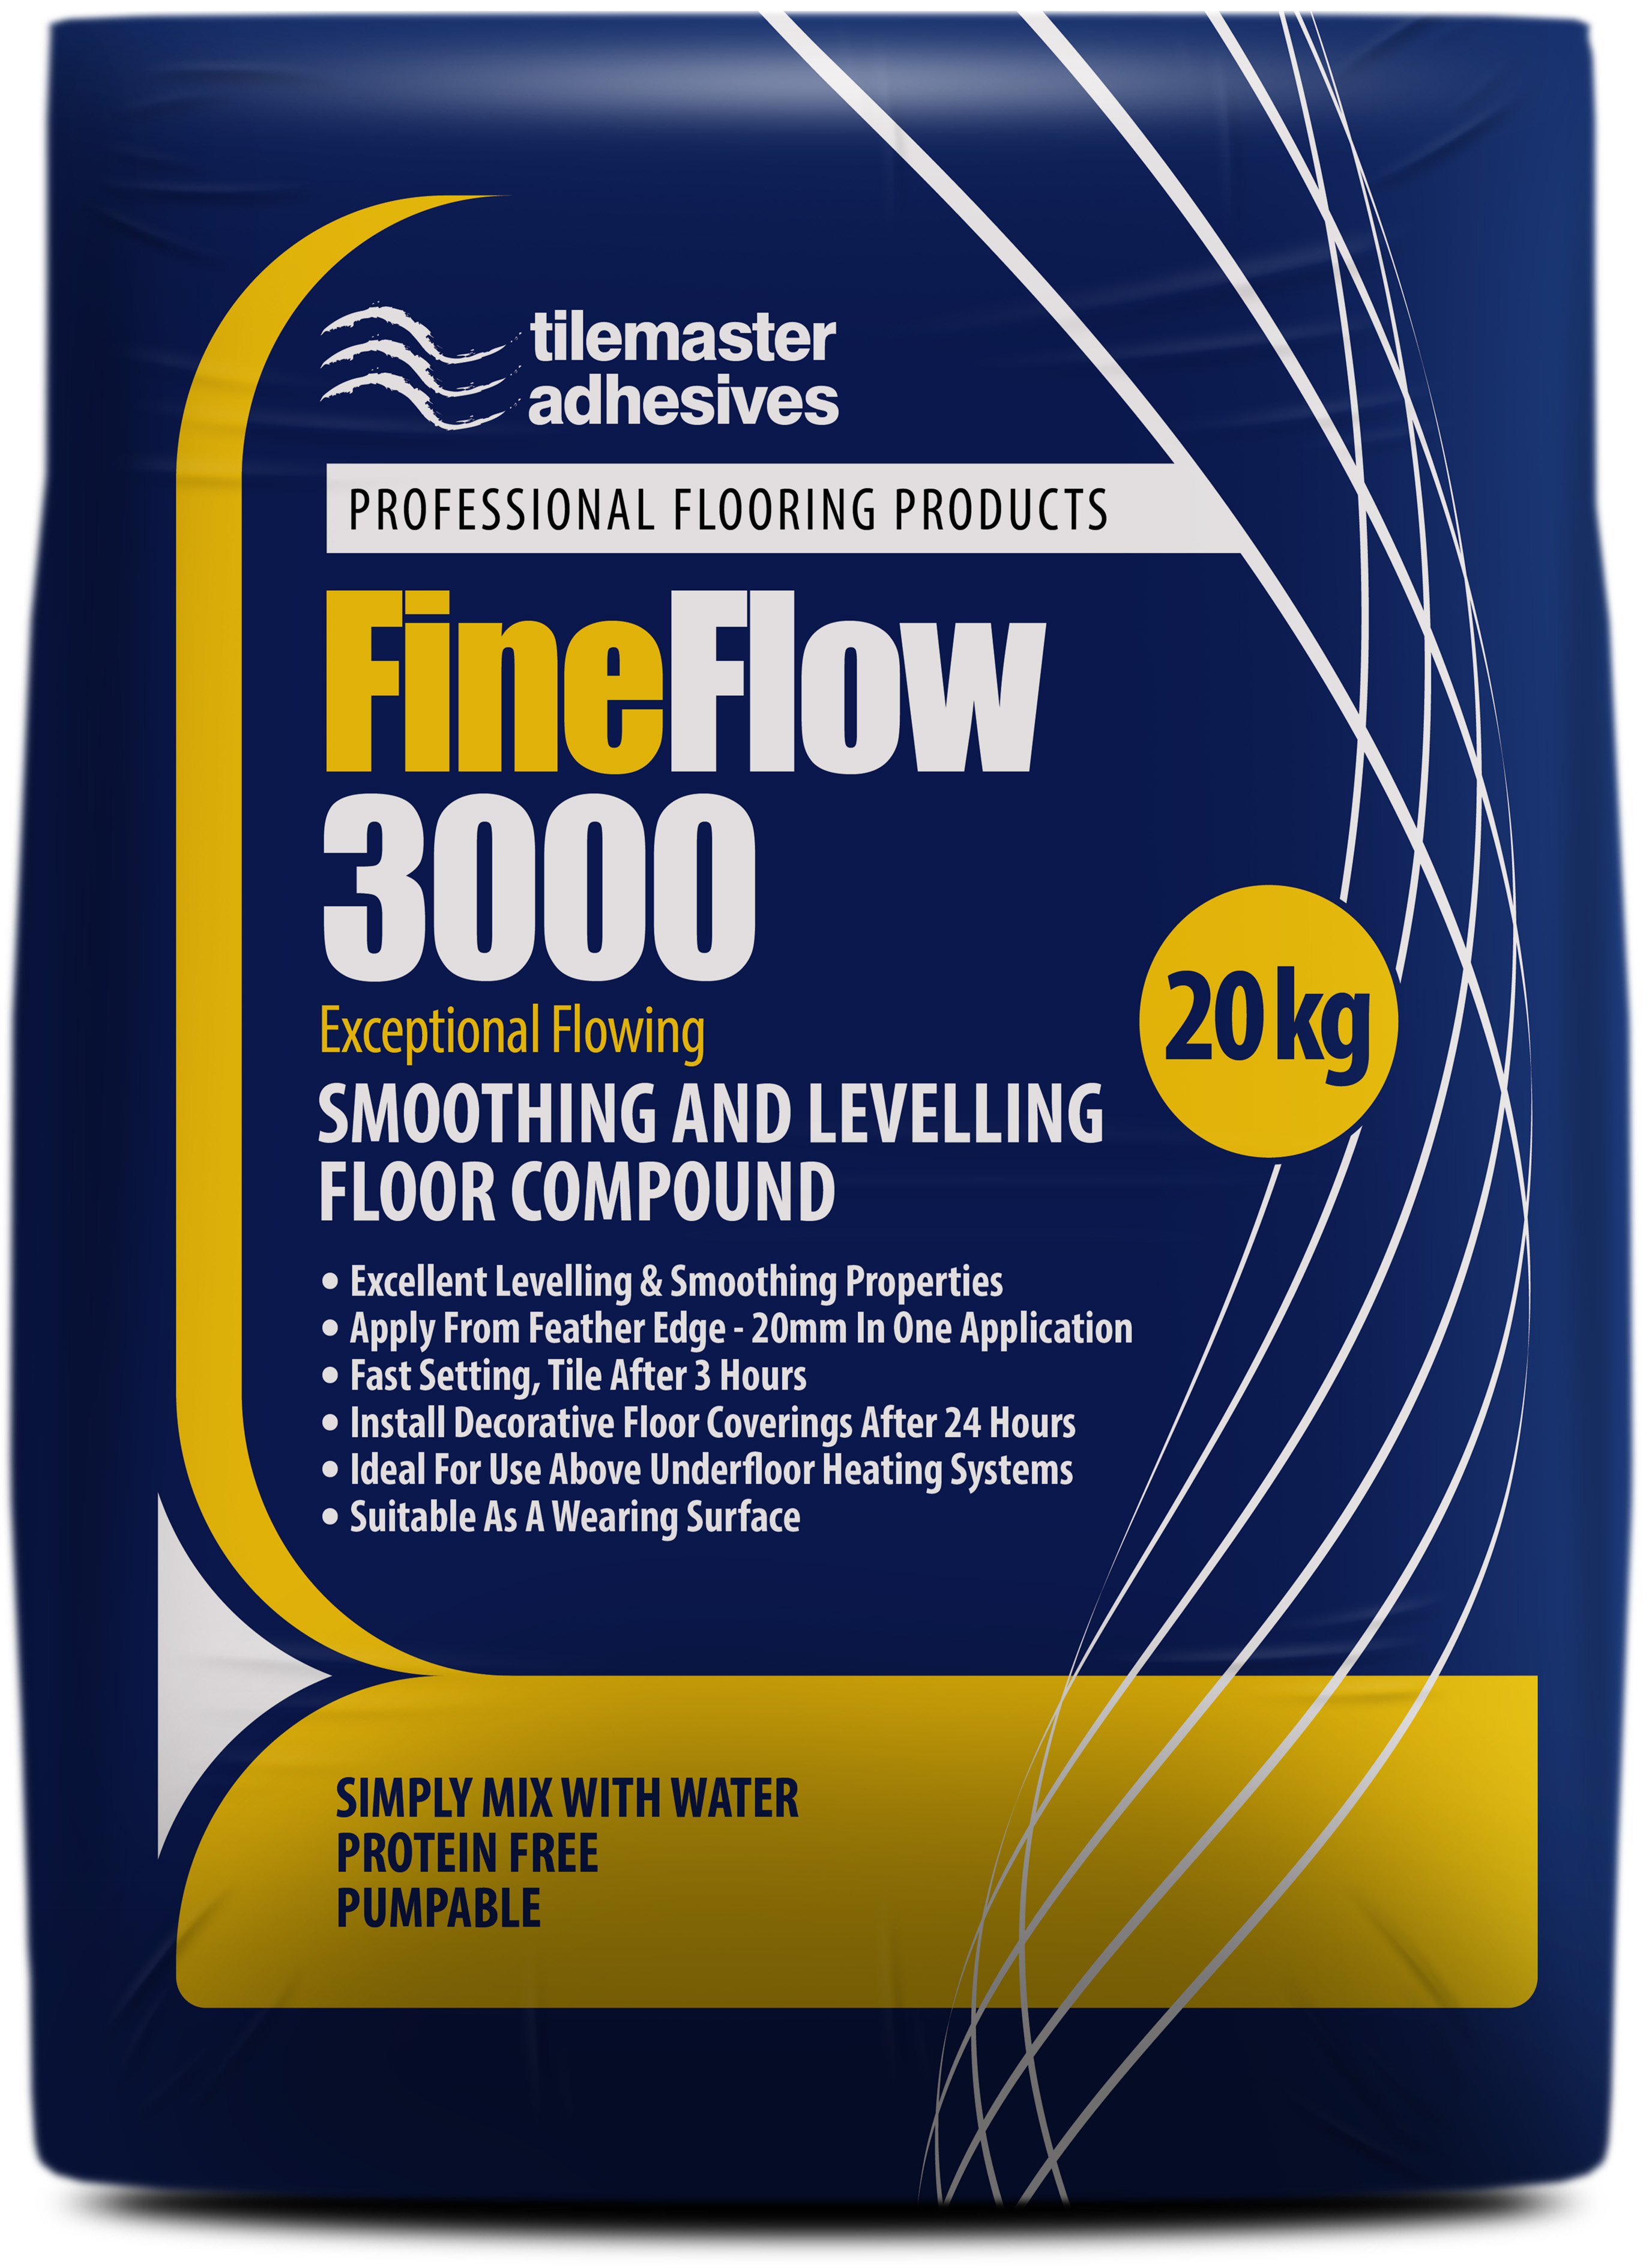 FineFlow 3000